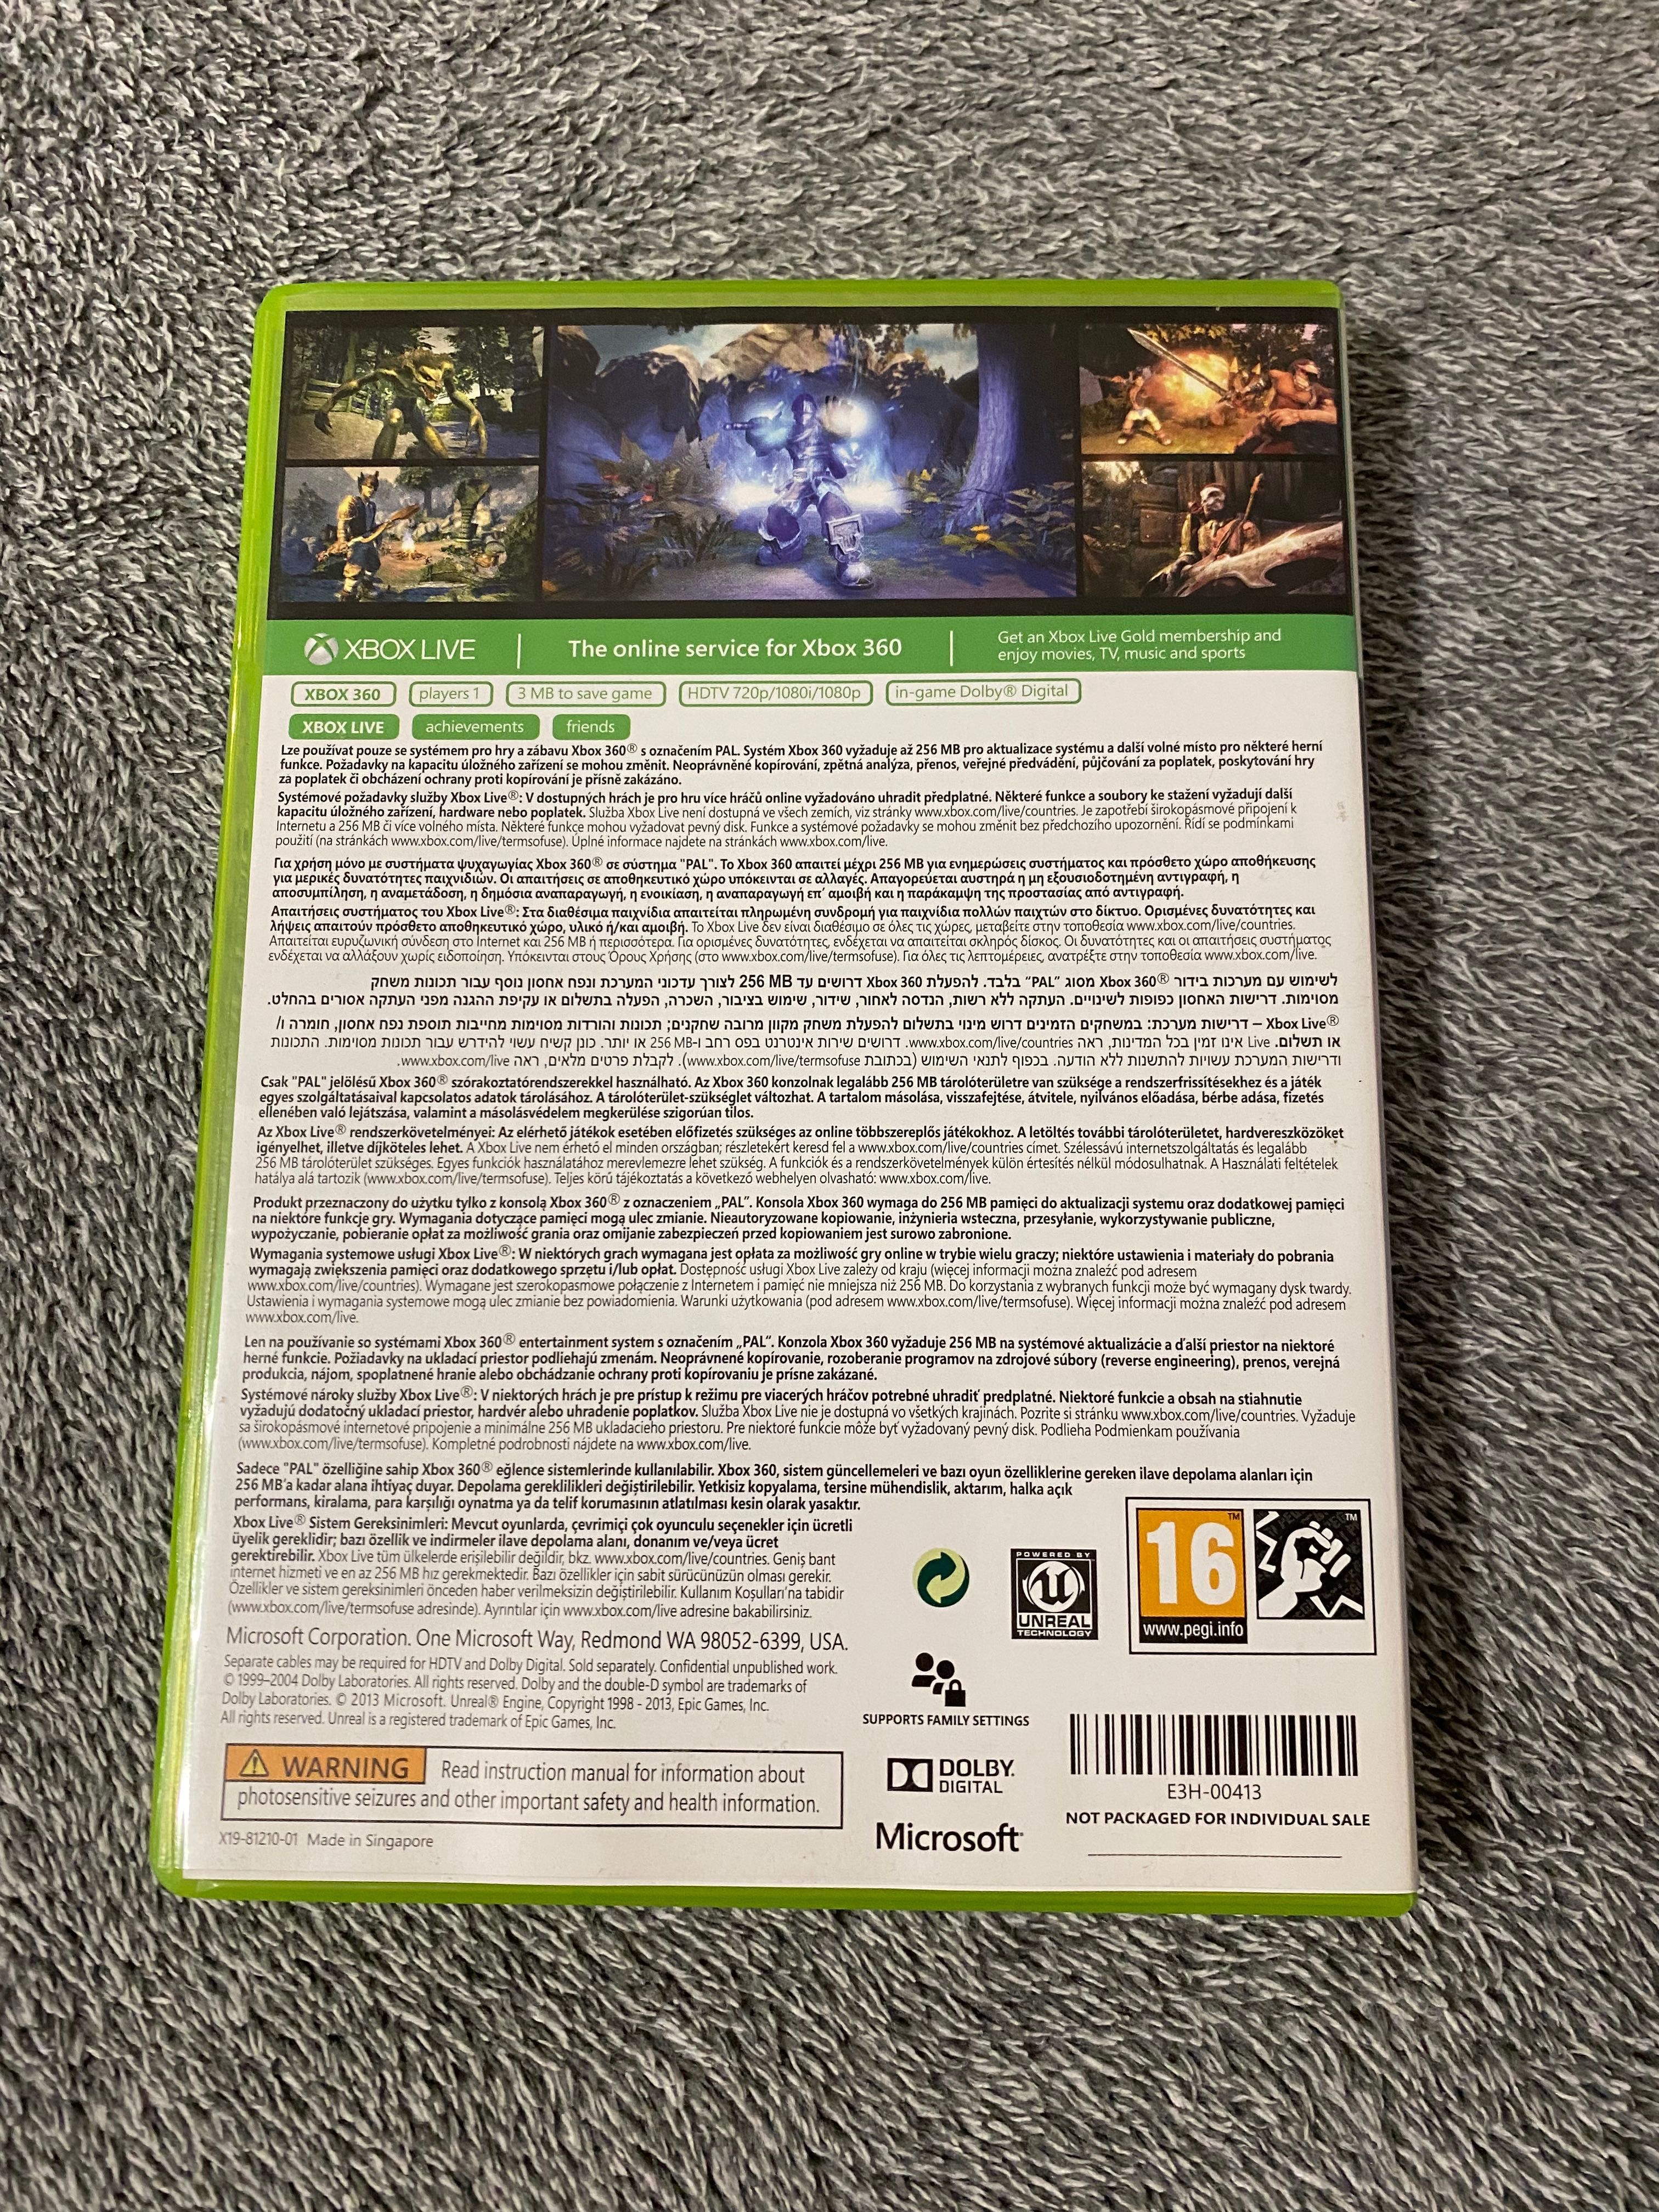 Gra Fable Anniversary Xbox 360